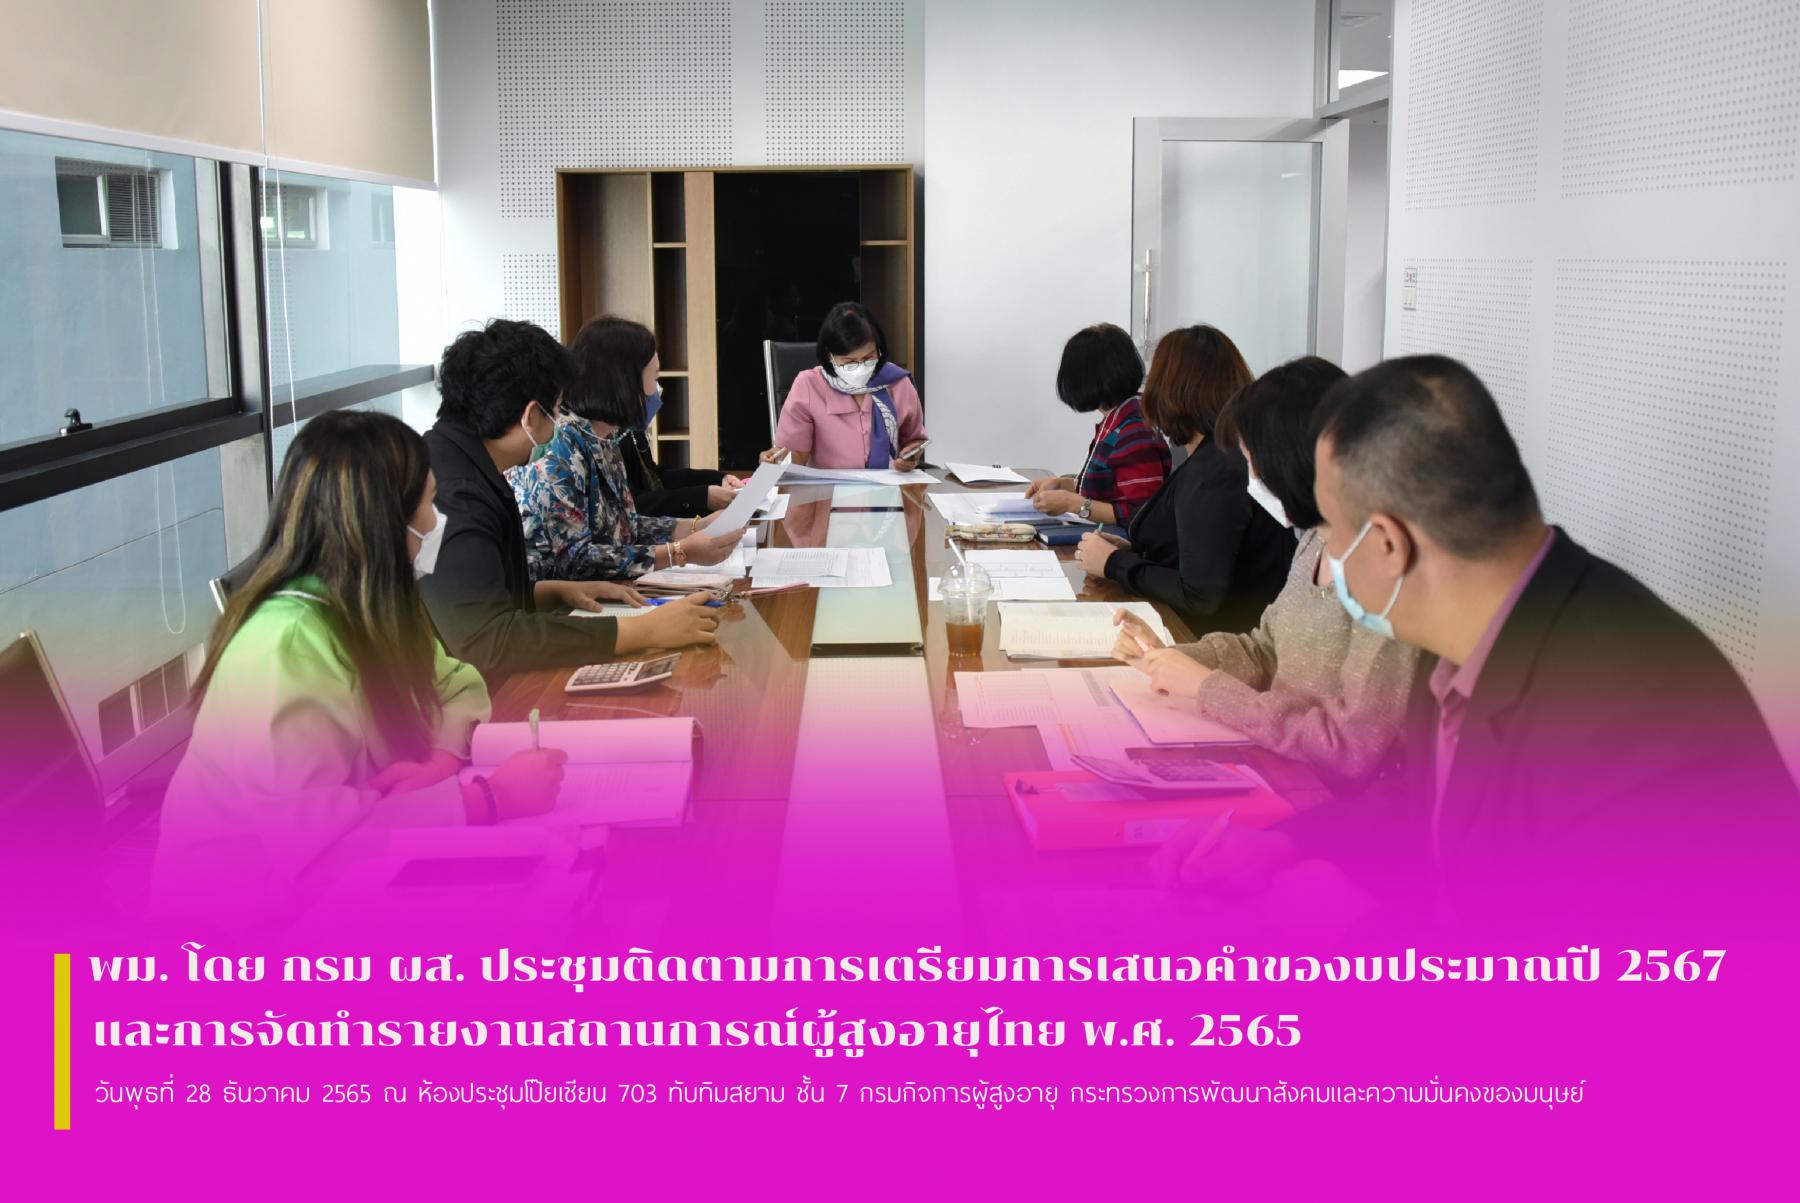 พม. โดย กรม ผส. ประชุมติดตามการเตรียมการเสนอคำของบประมาณปี 2567 และการจัดทำรายงานสถานการณ์ผู้สูงอายุไทย พ.ศ. 2565